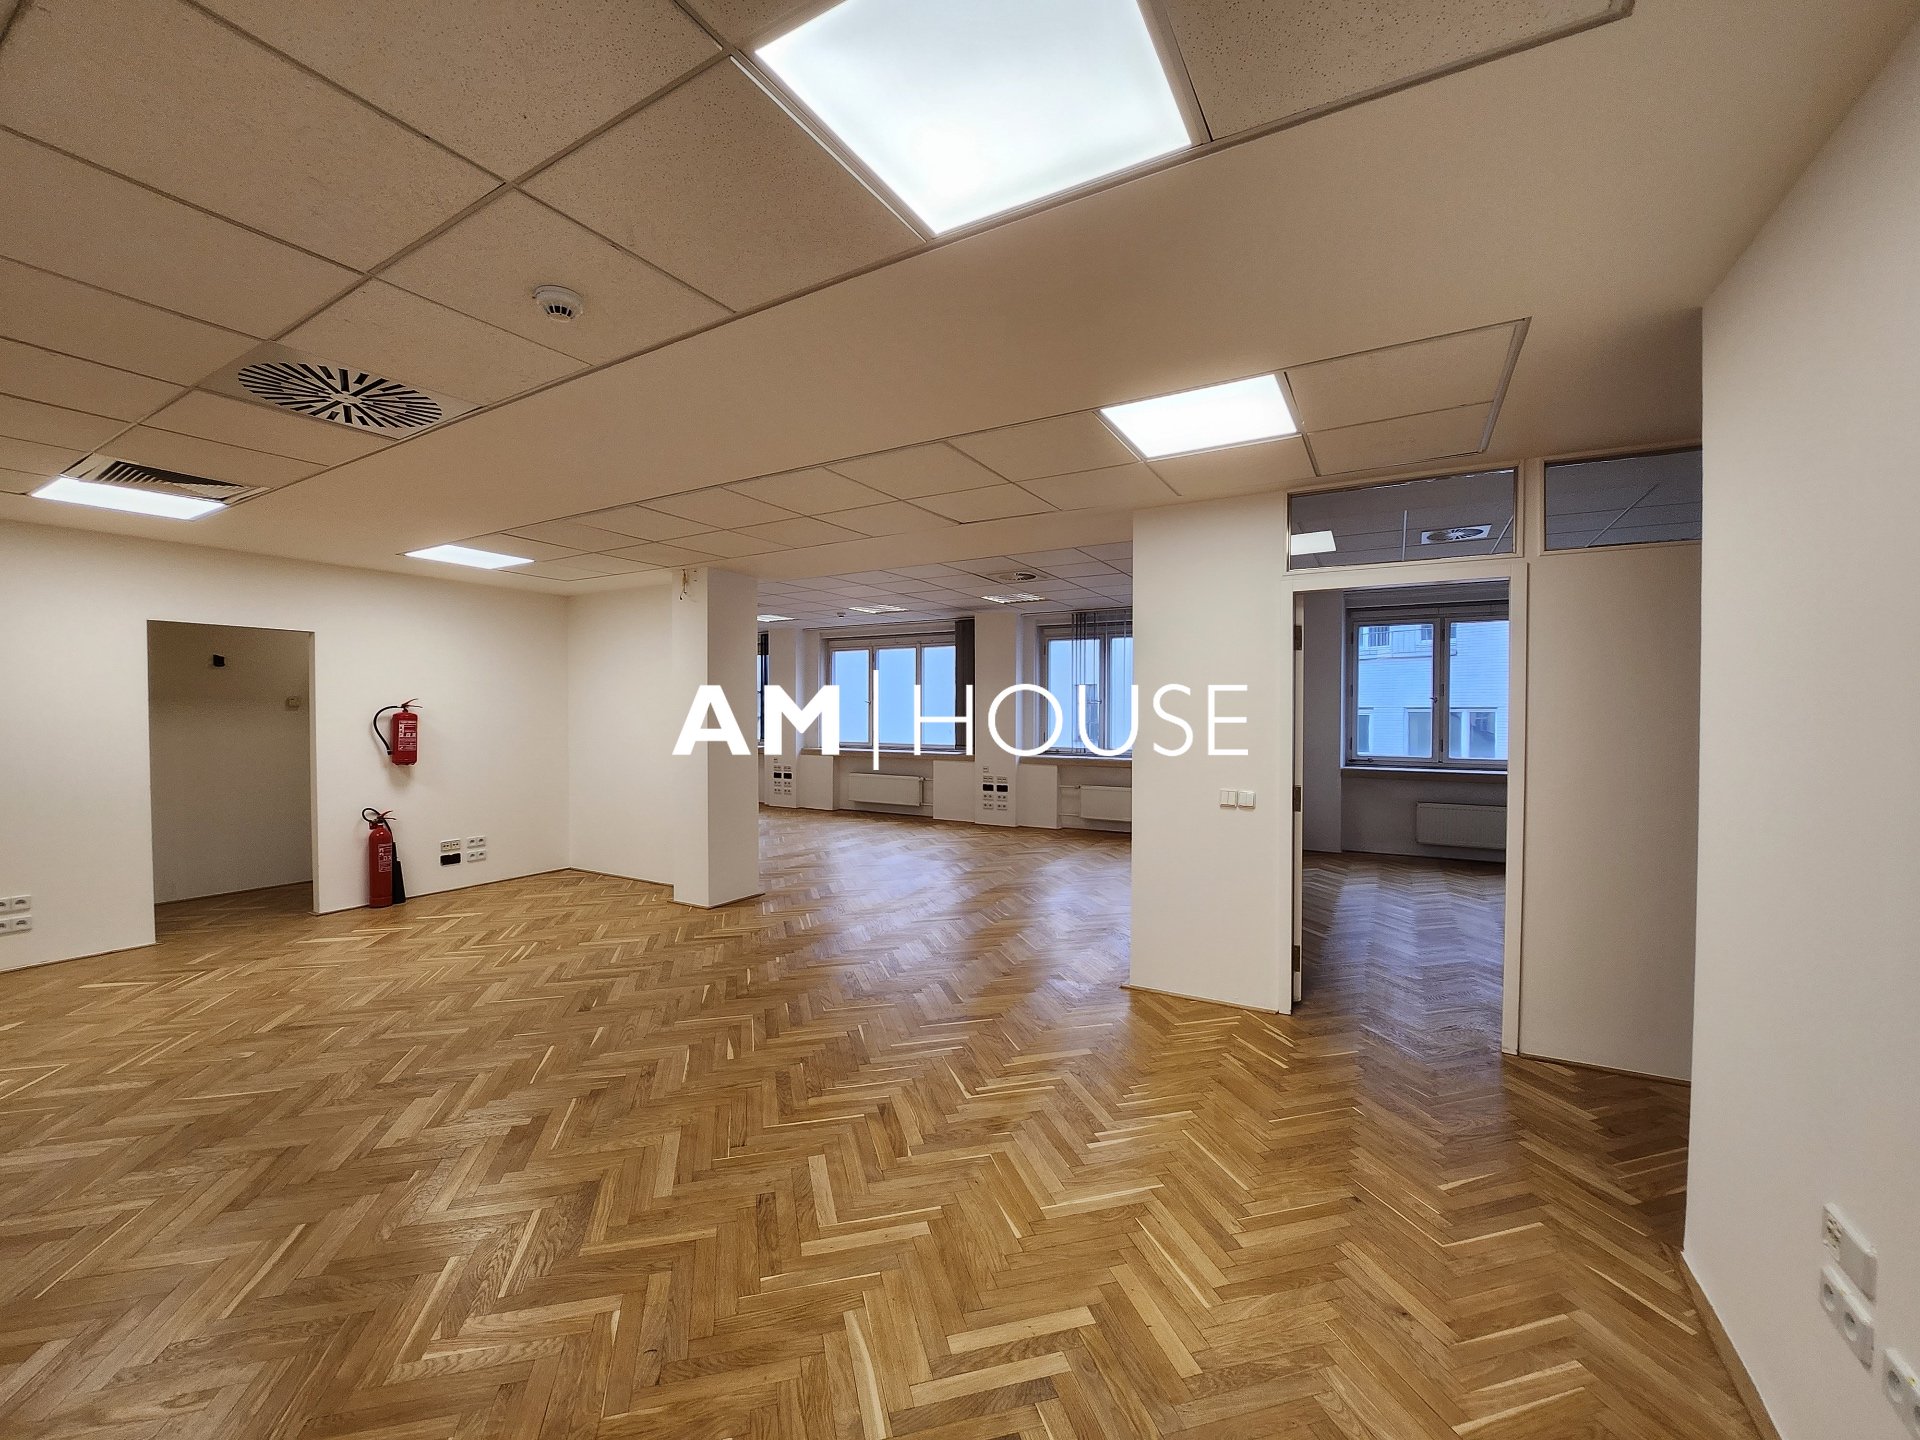 Аренда, Офисные помещения, 194 m² – Praha – Staré Město